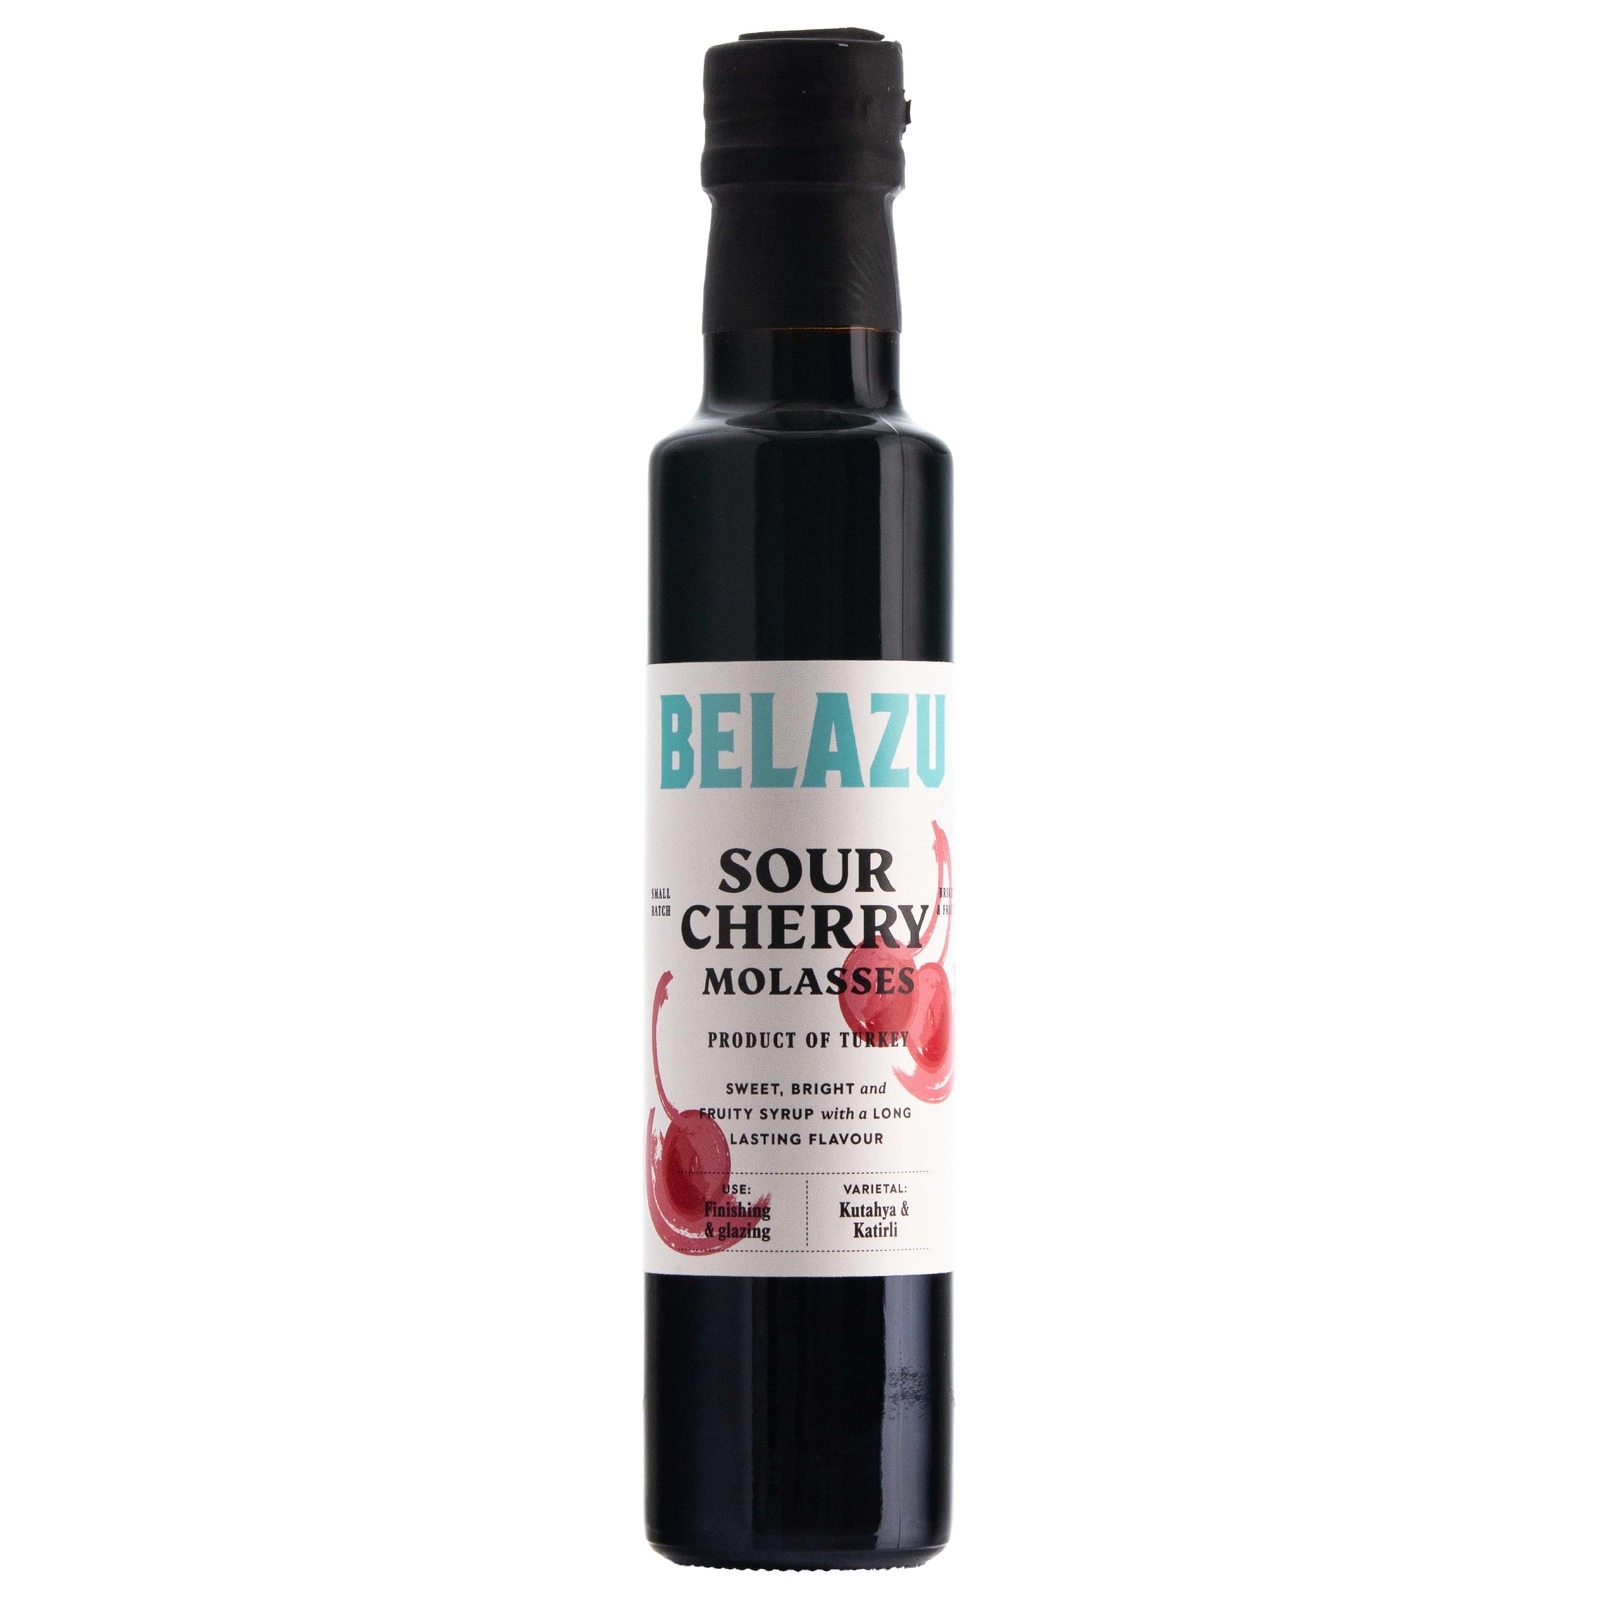 BELAZU Sour Cherry Molasses (250g)